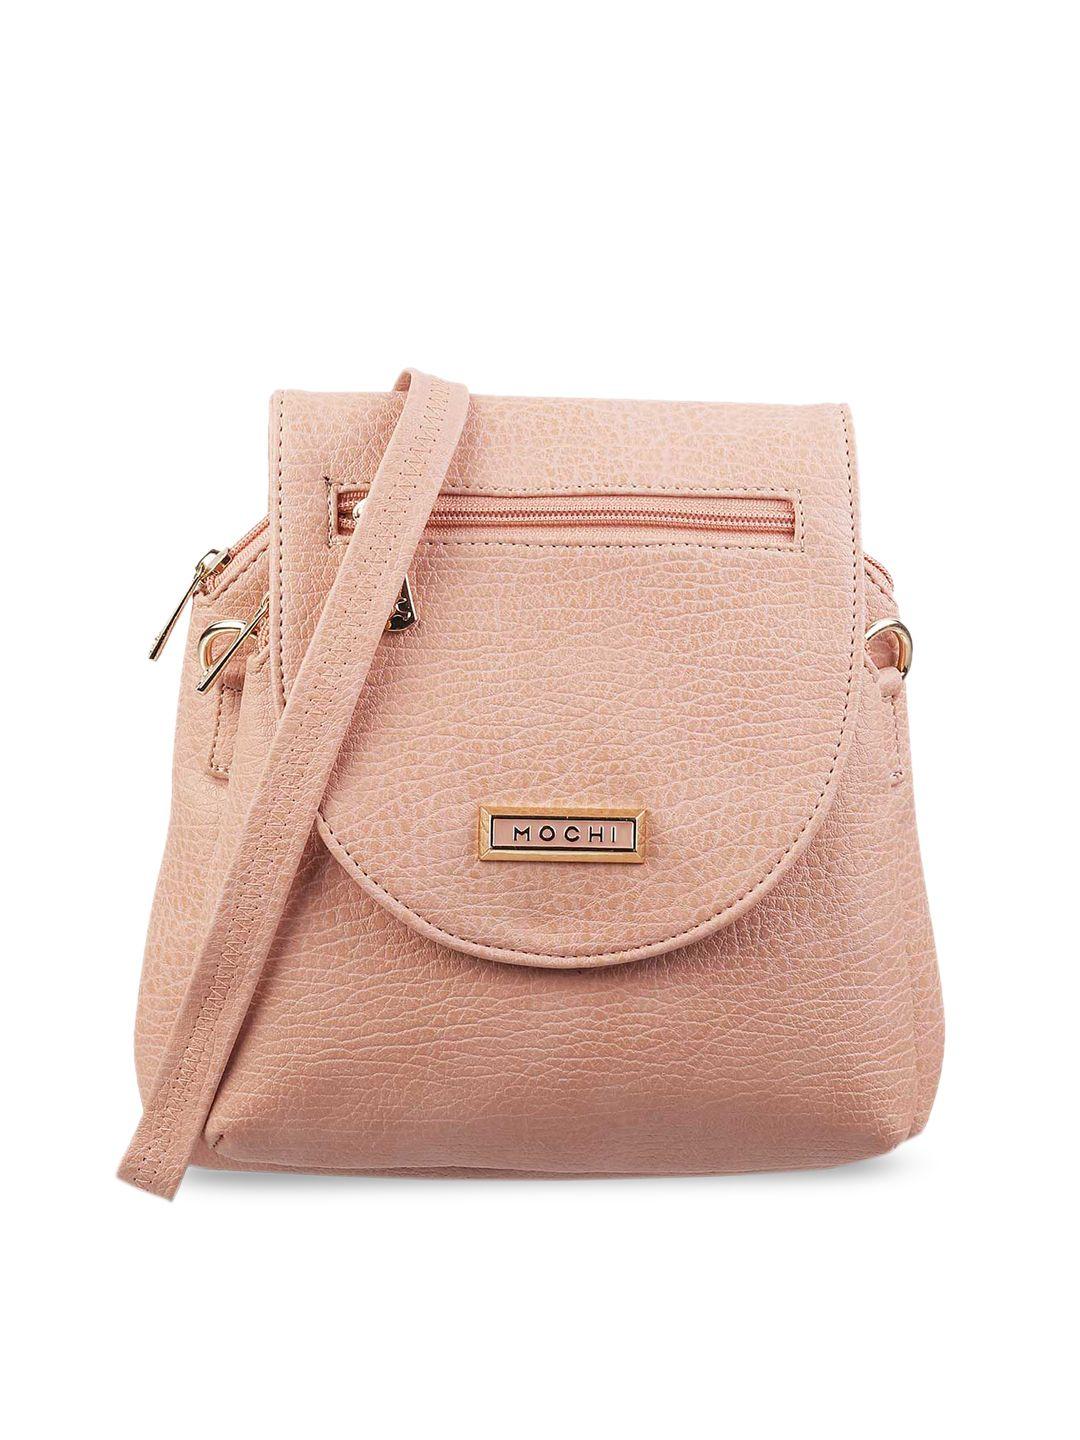 mochi-pink--textured-structured-sling-bag